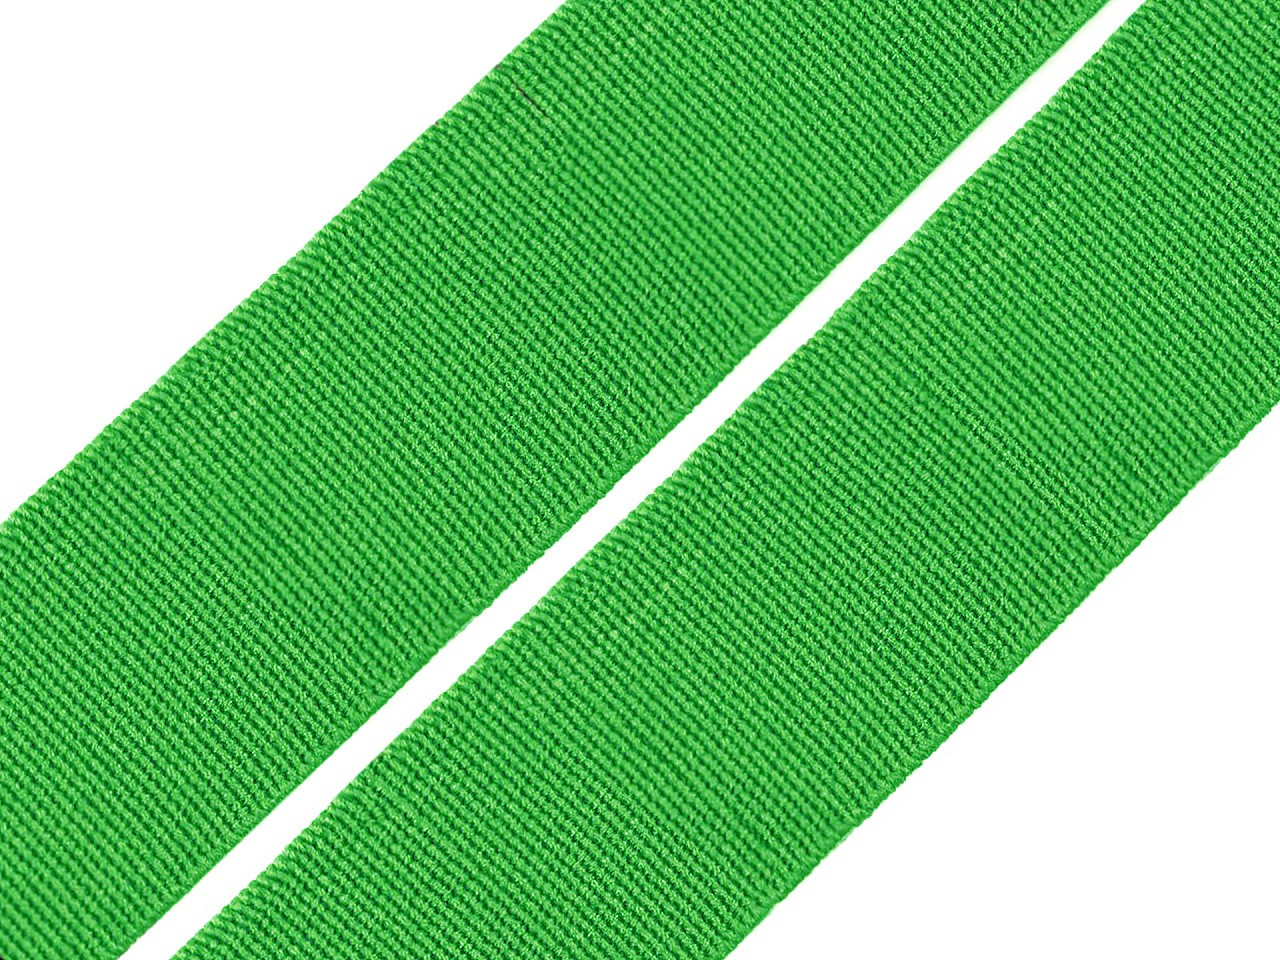 Pruženka hladká šíře 20 mm tkaná barevná, barva 4859 zelená